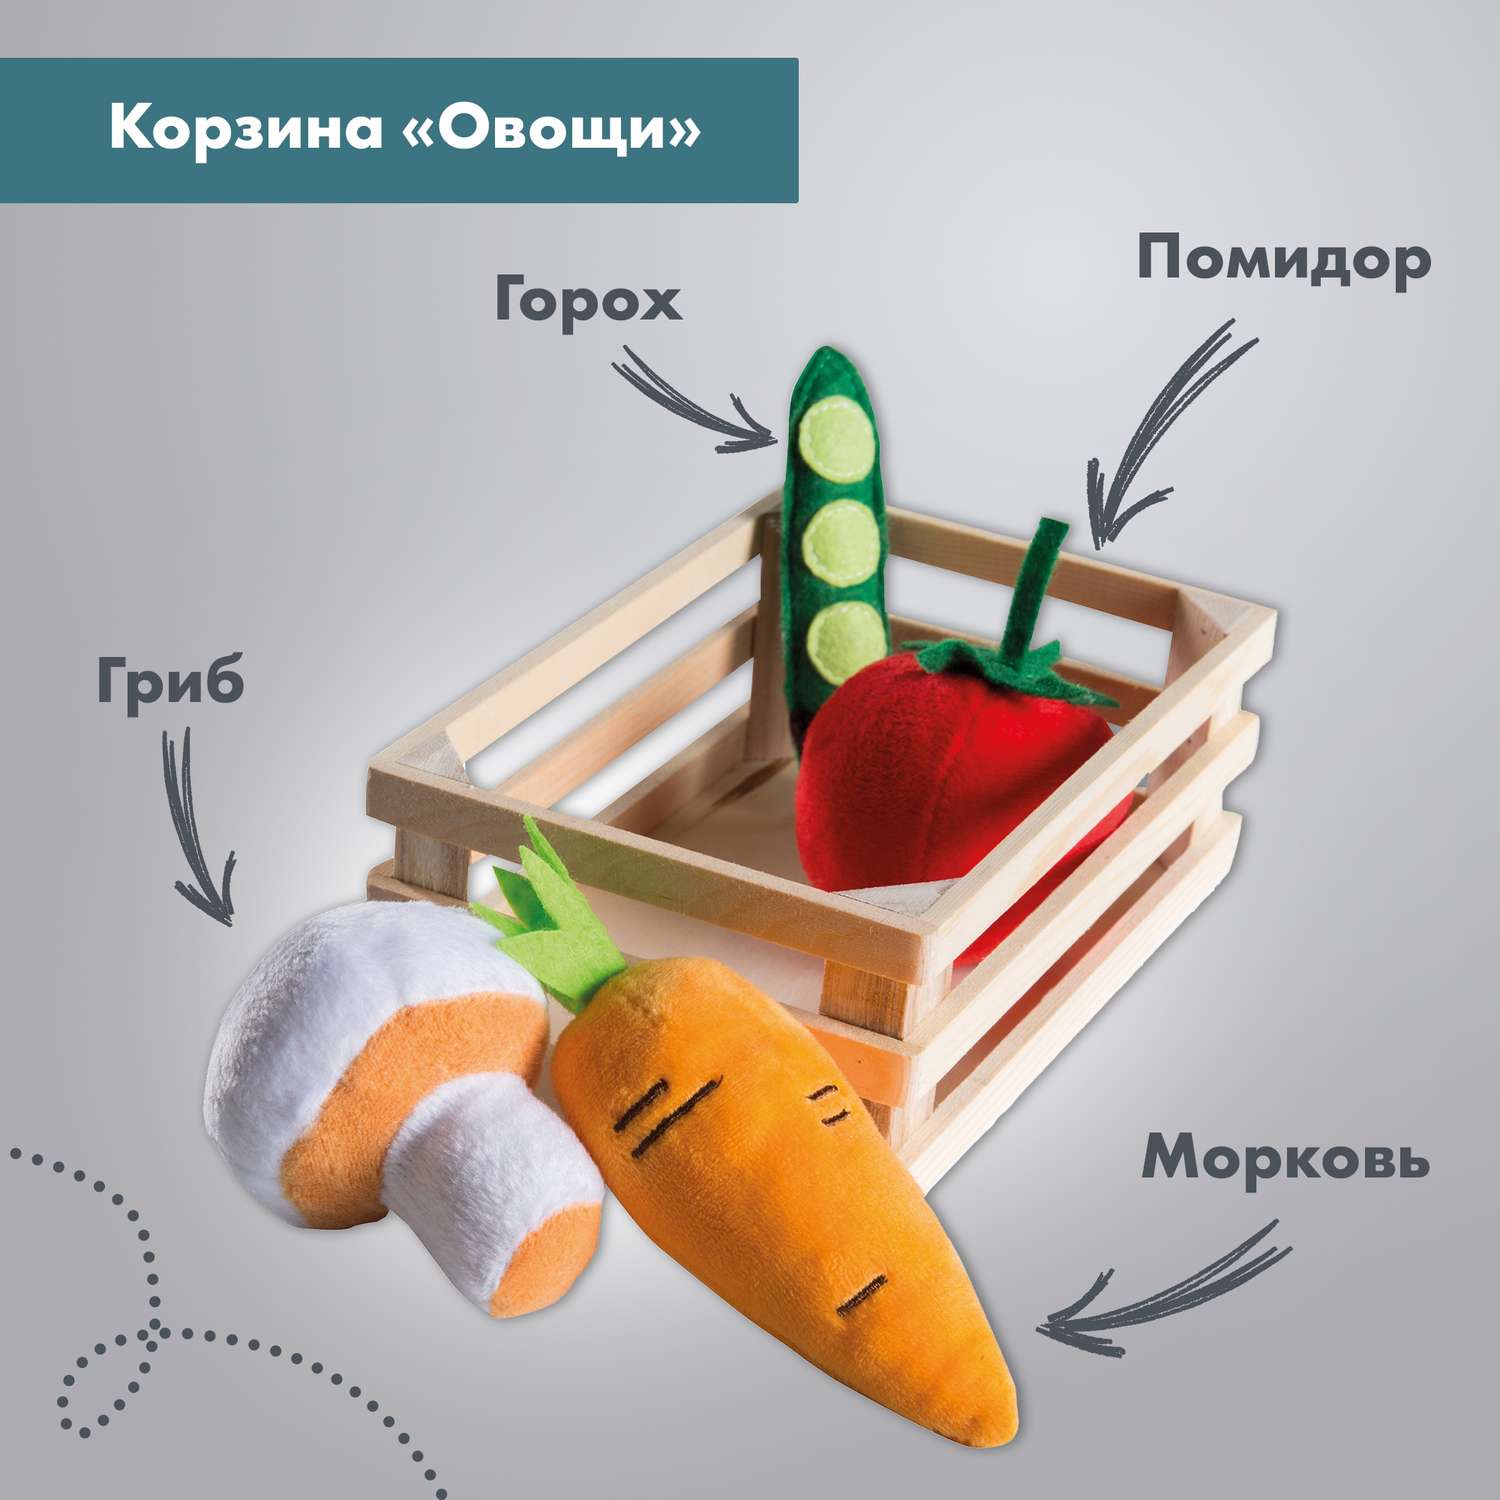 Набор плюшевых продуктов Roba игровой для детского магазина или кухни 98145 - фото 4